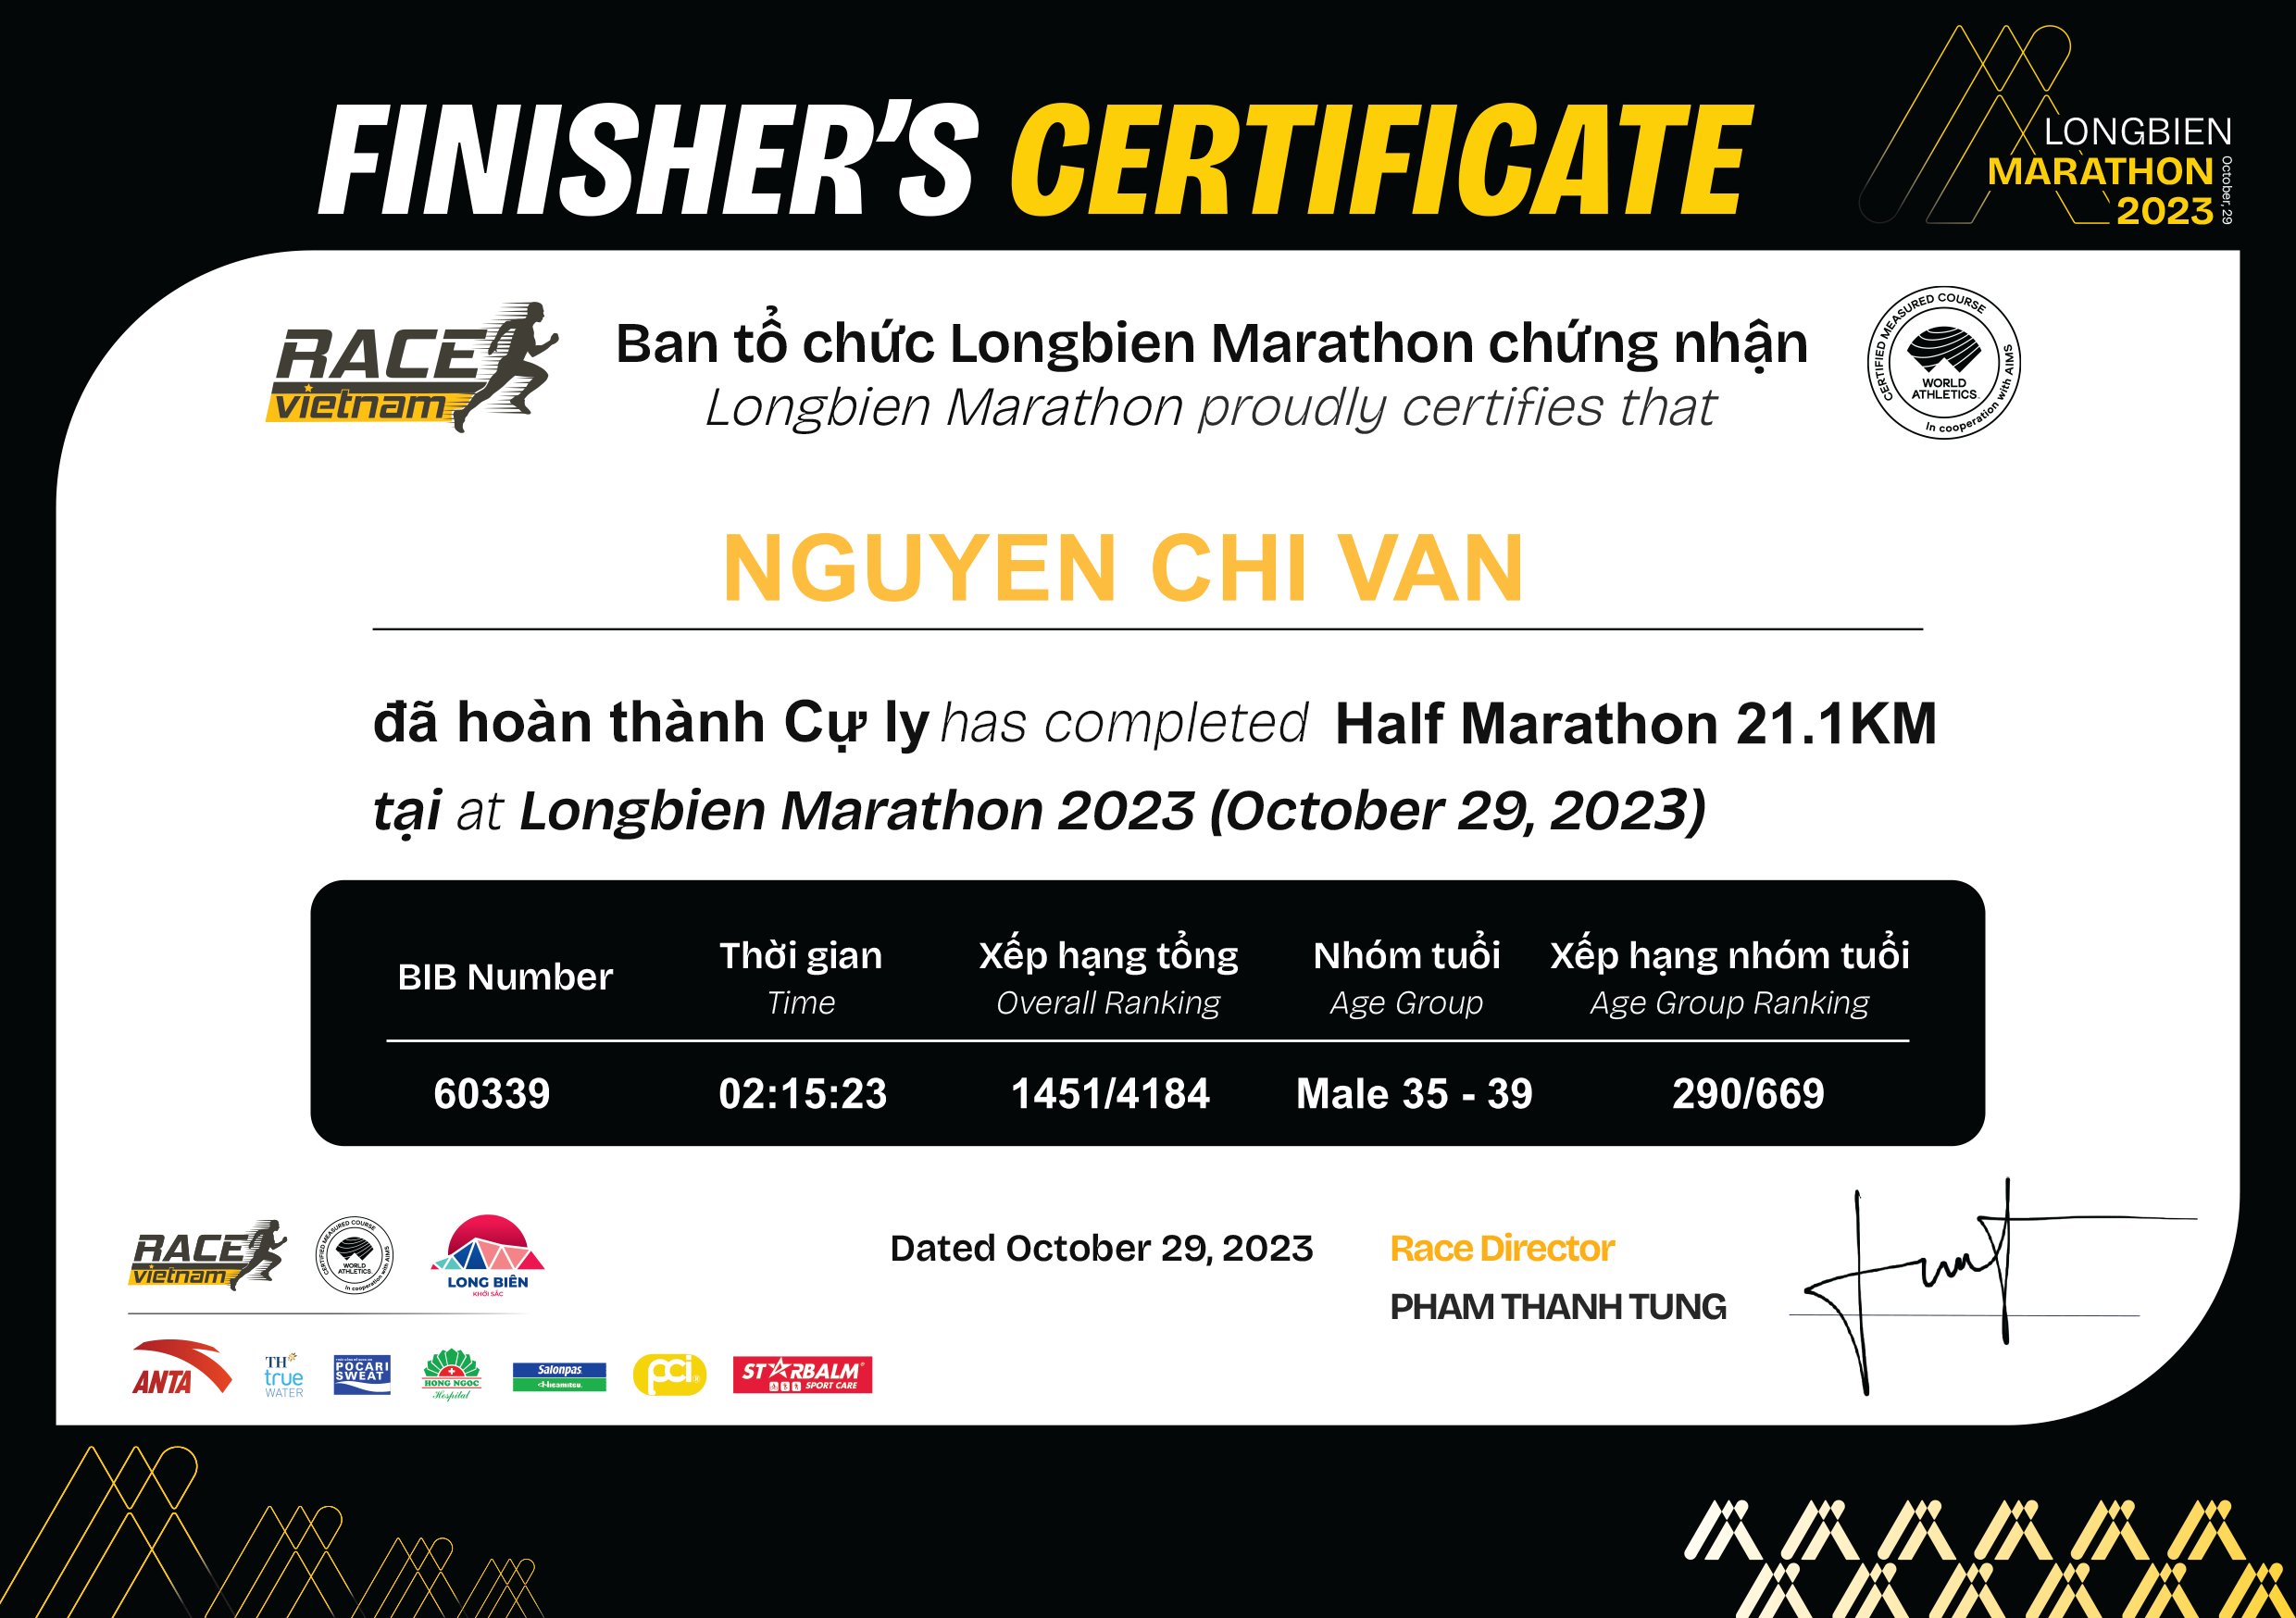 60339 - Nguyen Chi Van